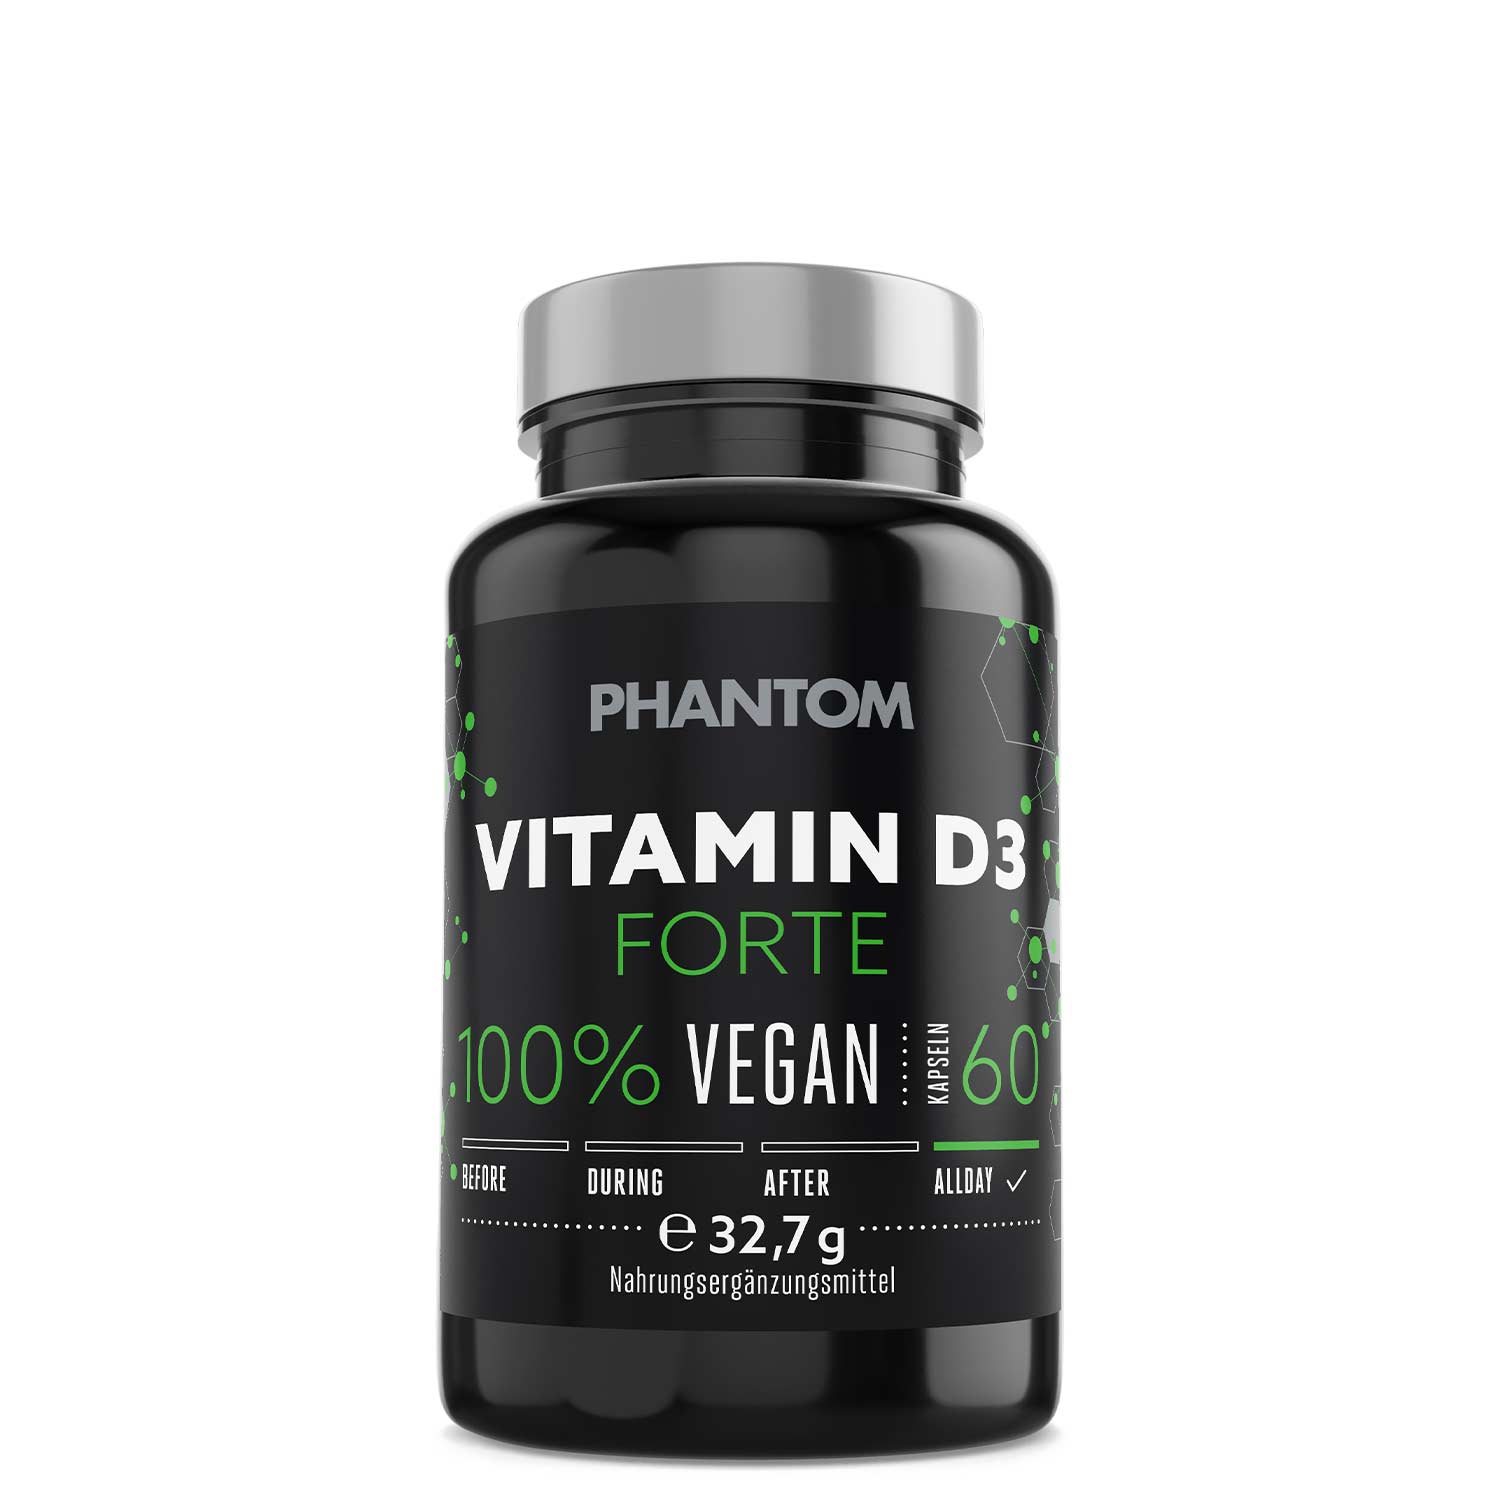 Phantom Vitamin D3 Forte für ein besseres Immunsystem im Kampfsport.